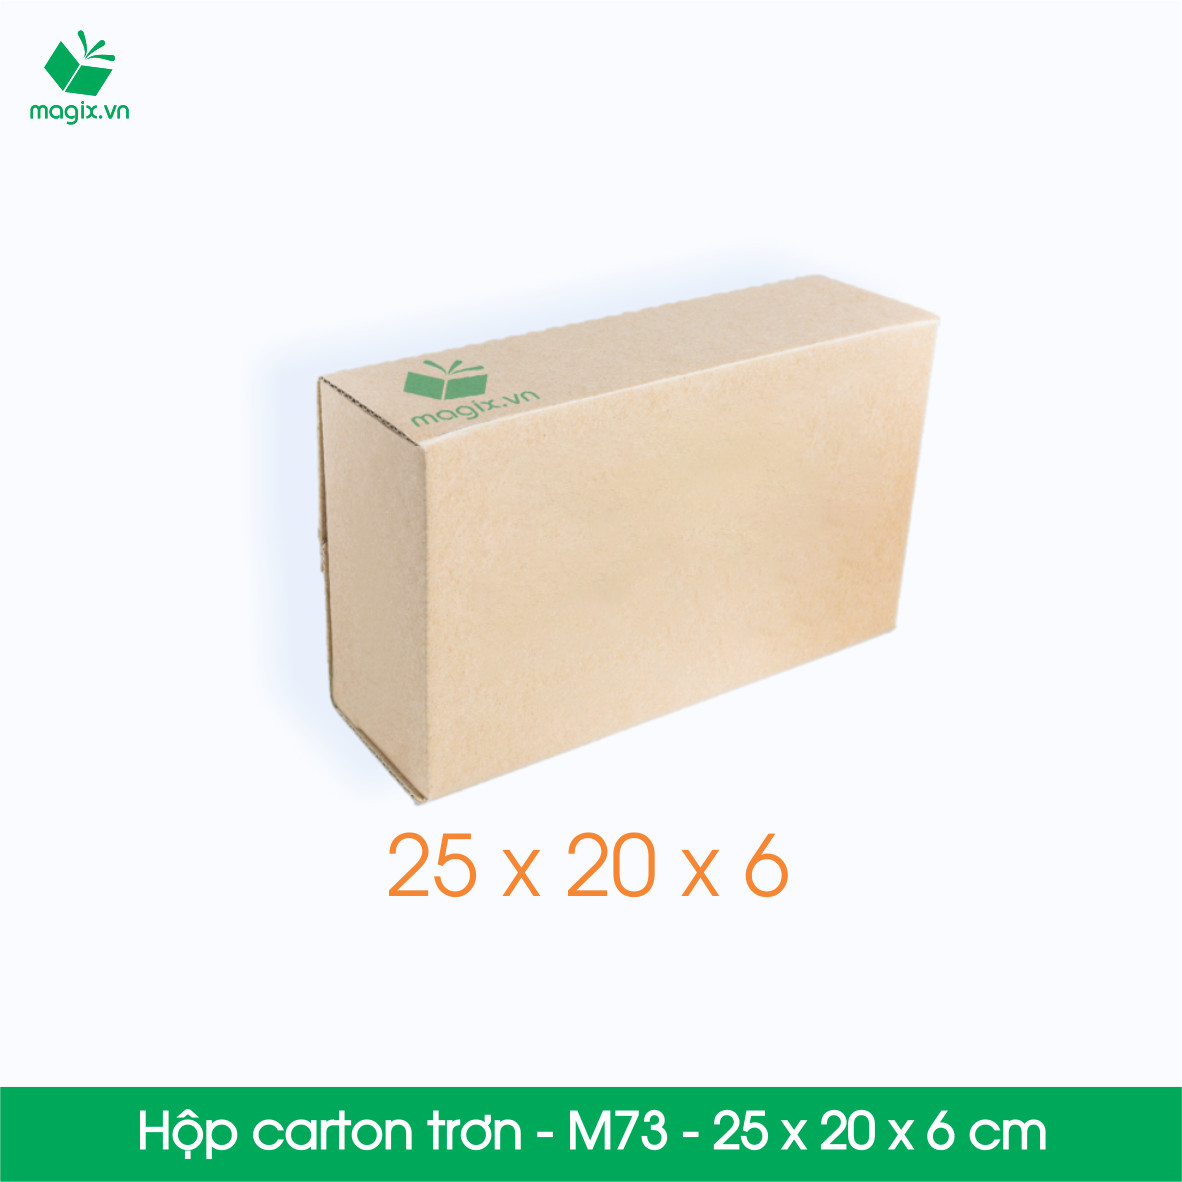 M73 -  25 Thùng hộp carton trơn - 25x20x6 cm